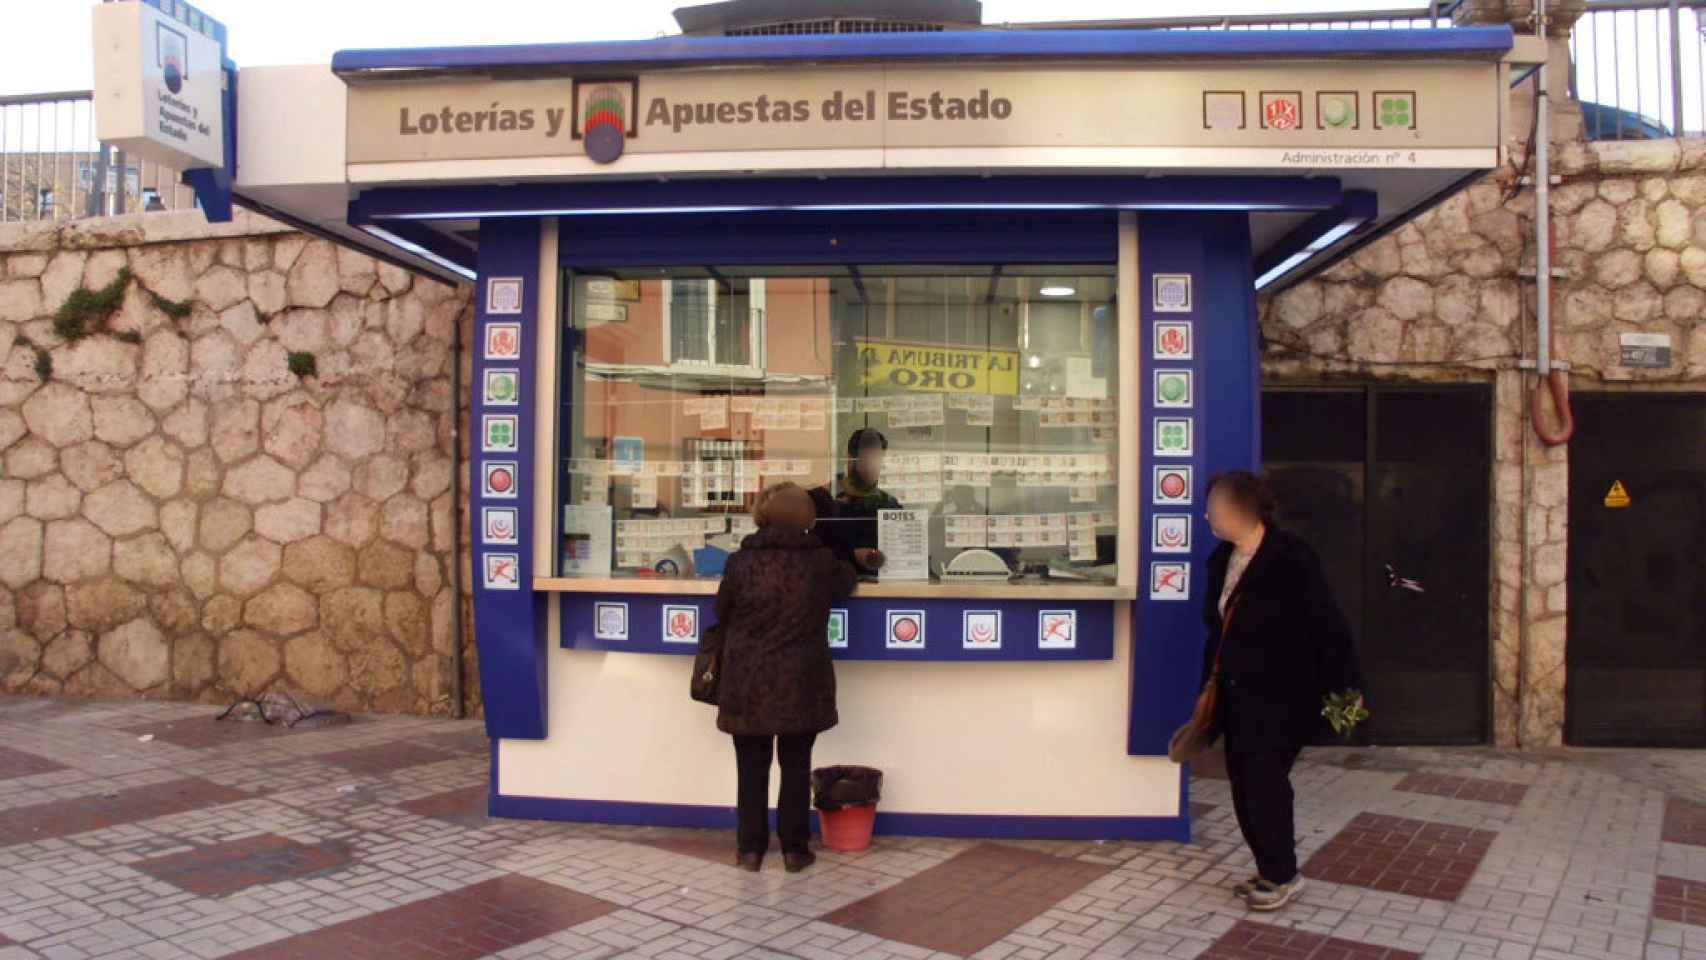 La administración de lotería de la Tribuna de los Pobres.